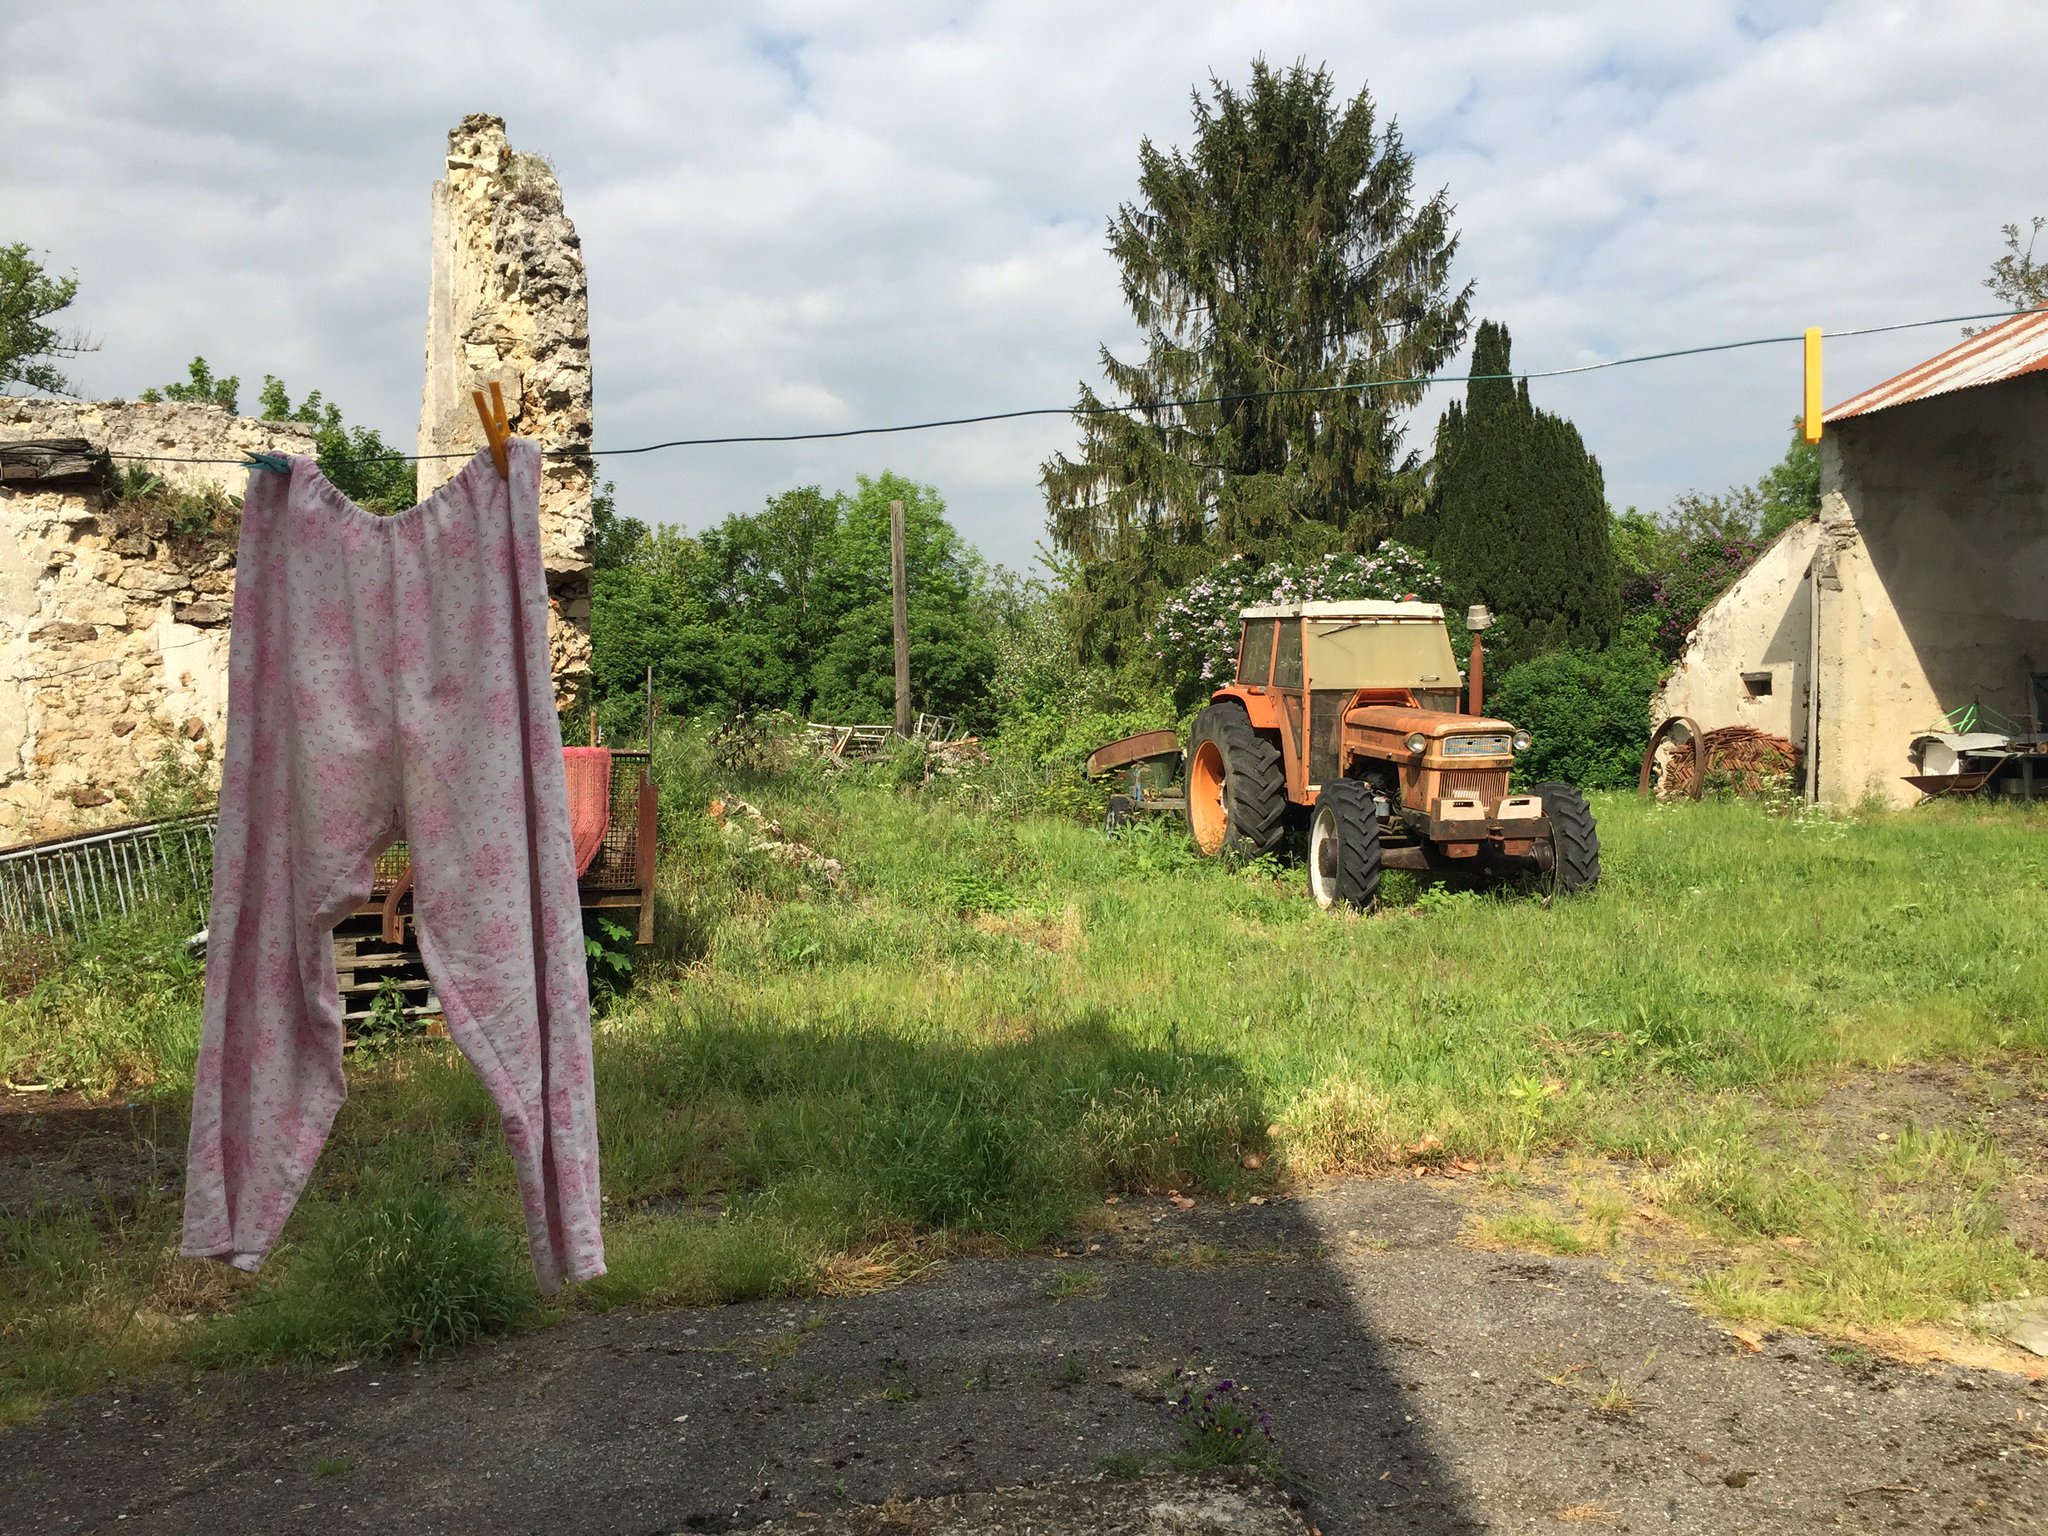 Il y a même un tracteur dans l'arrière cour #Madeleineproject https://t.co/cynqJ2ZQ5F